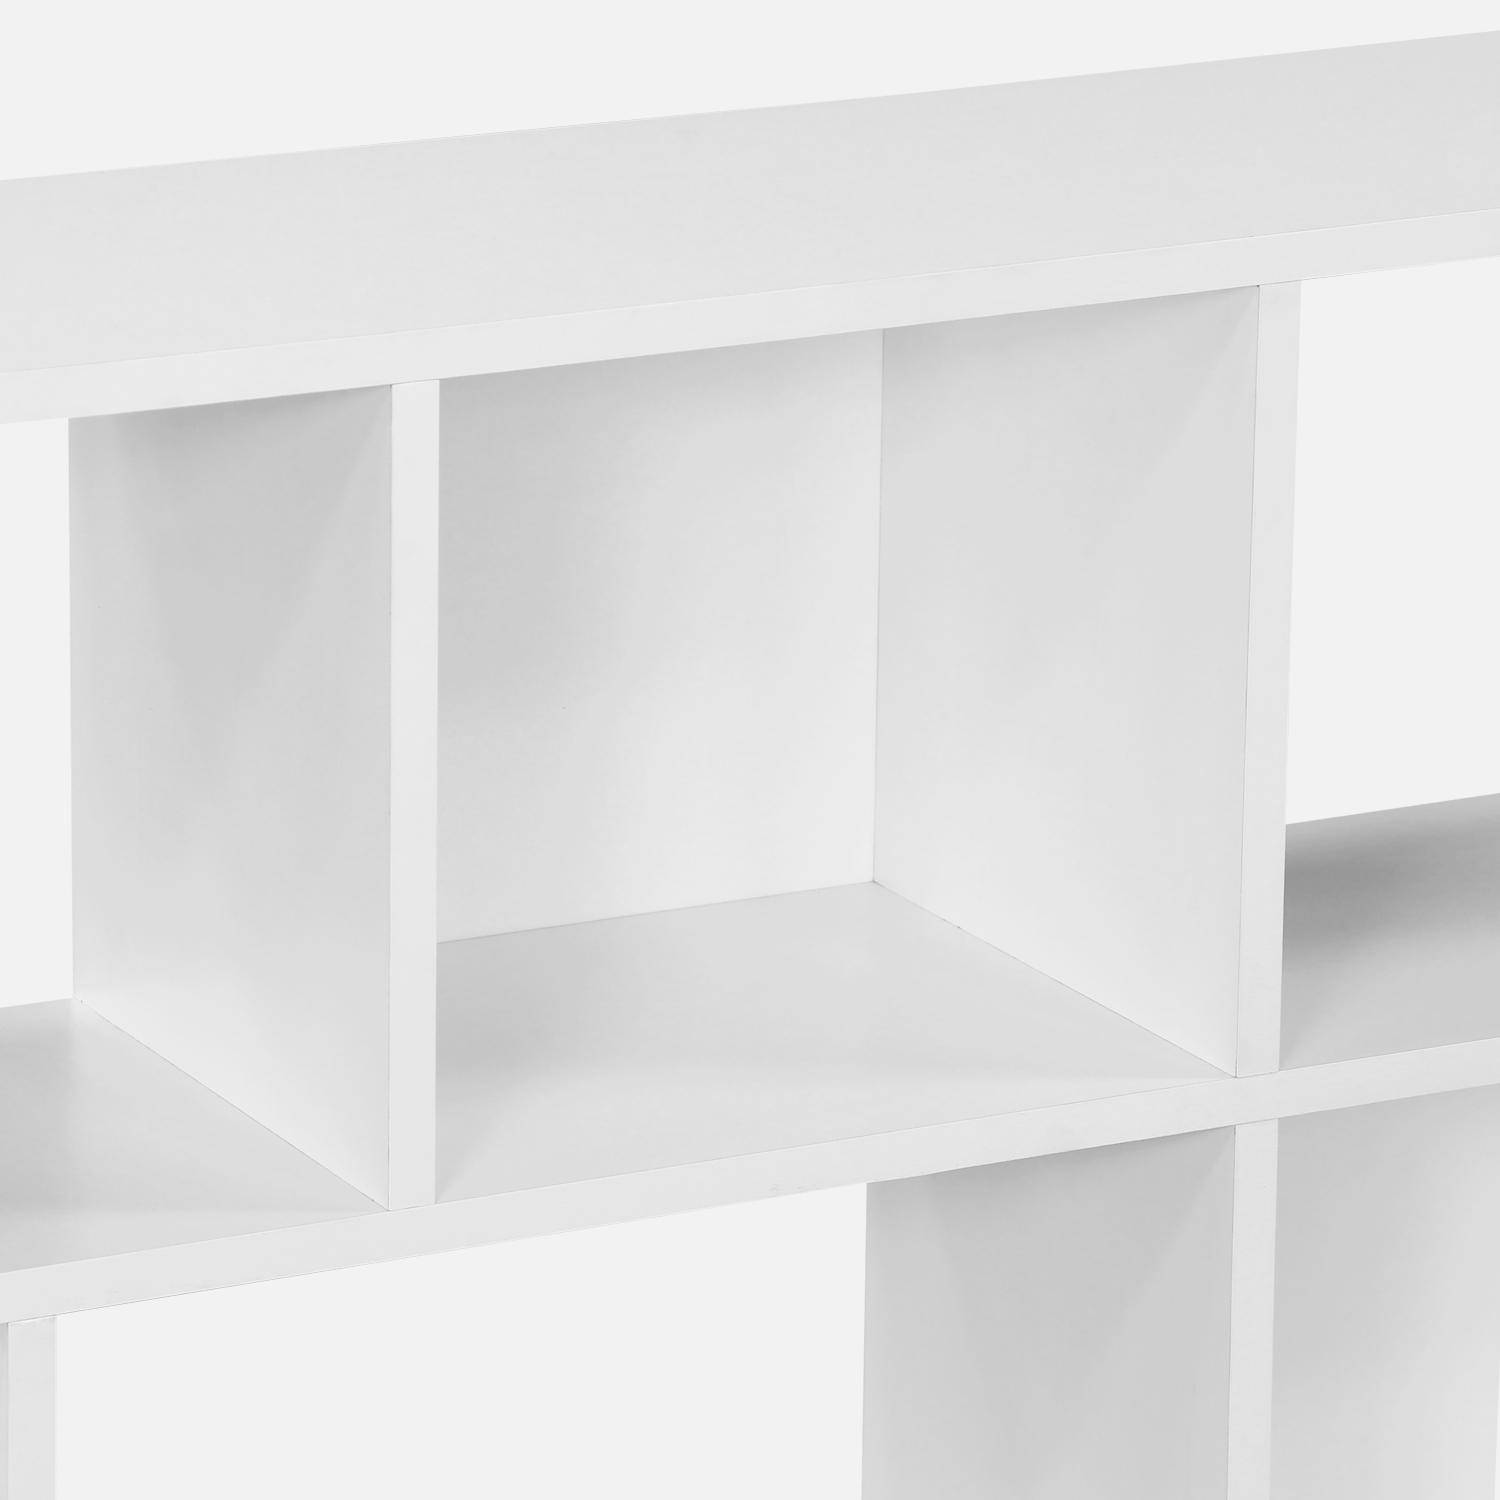 Bibliothèque design asymétrique blanche, Pieter, 3 étagères, 12 compartiments de rangement,sweeek,Photo6